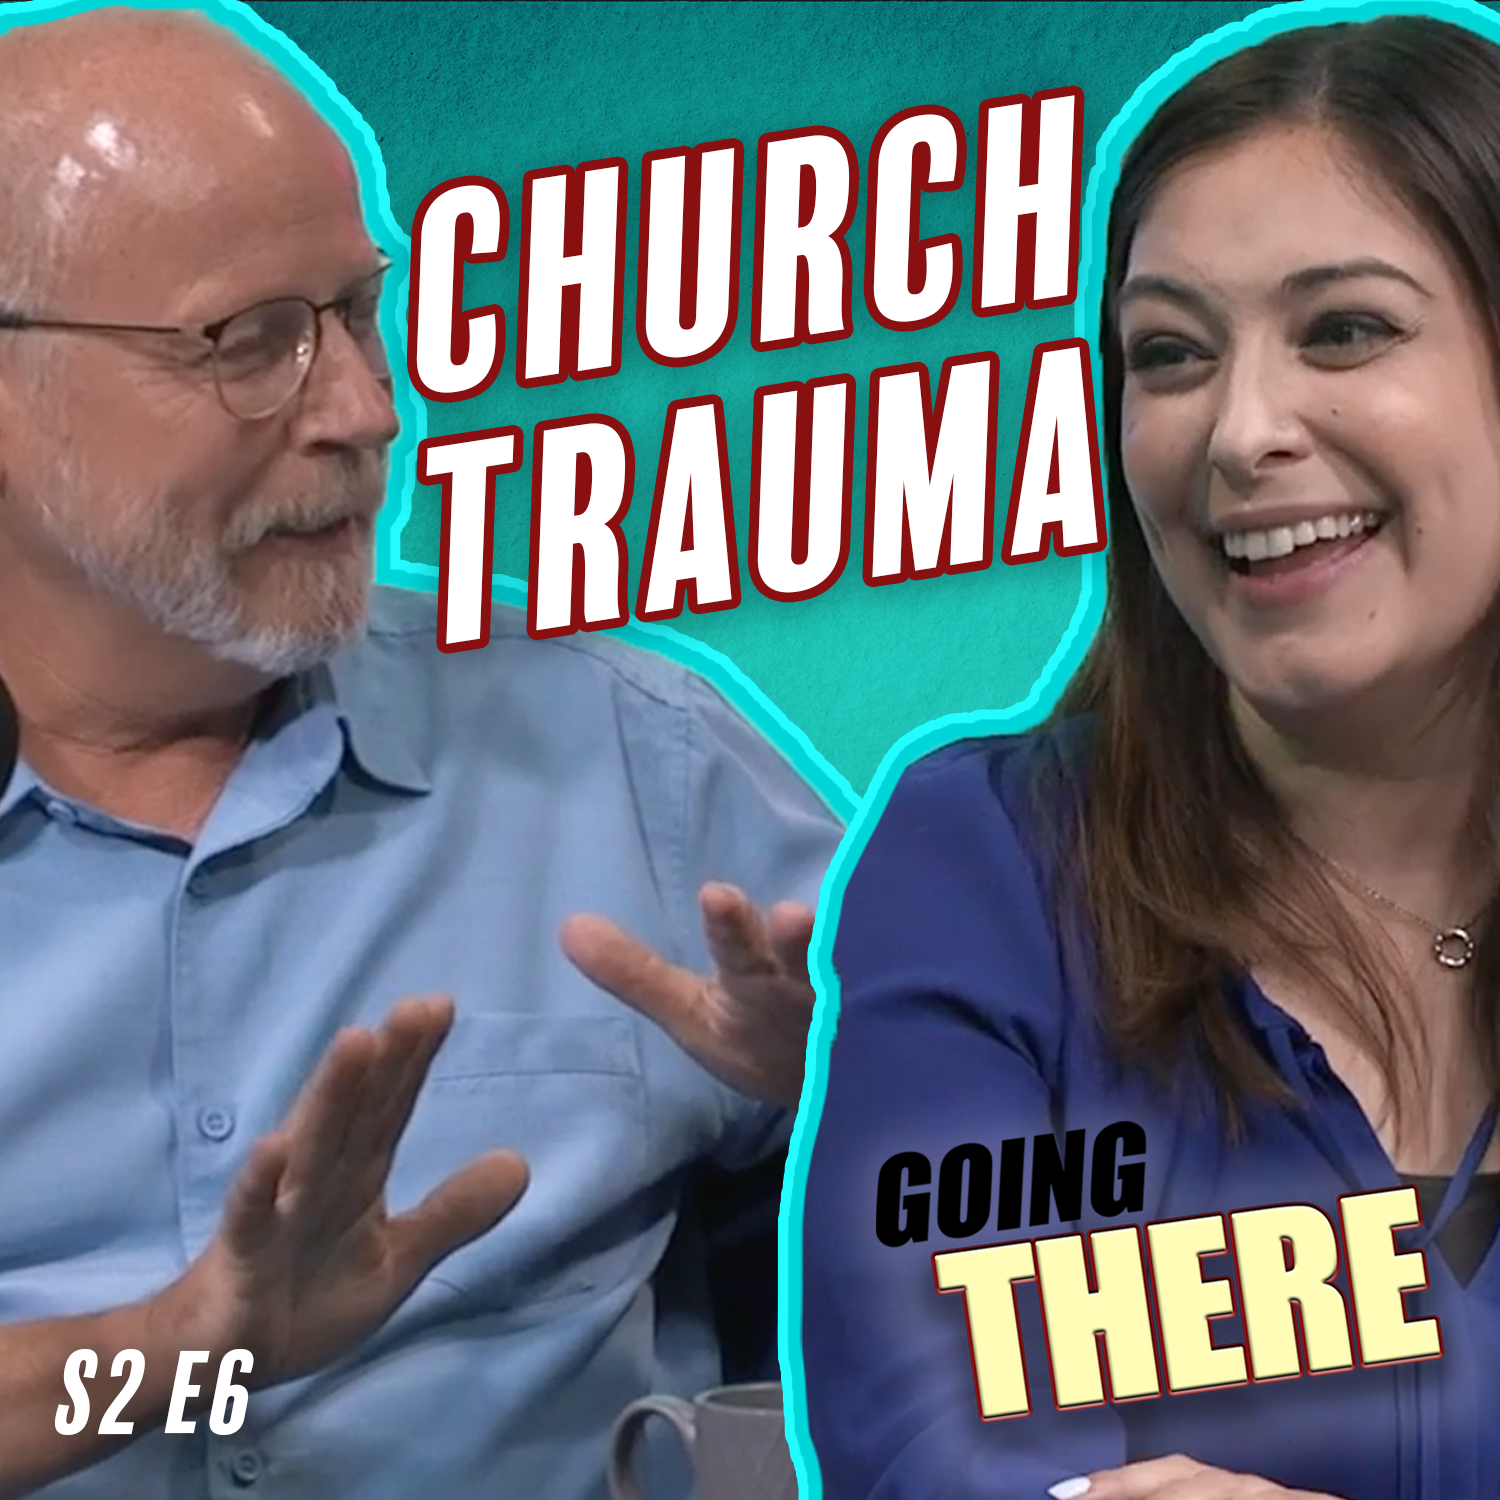 The Genesis of Church Trauma